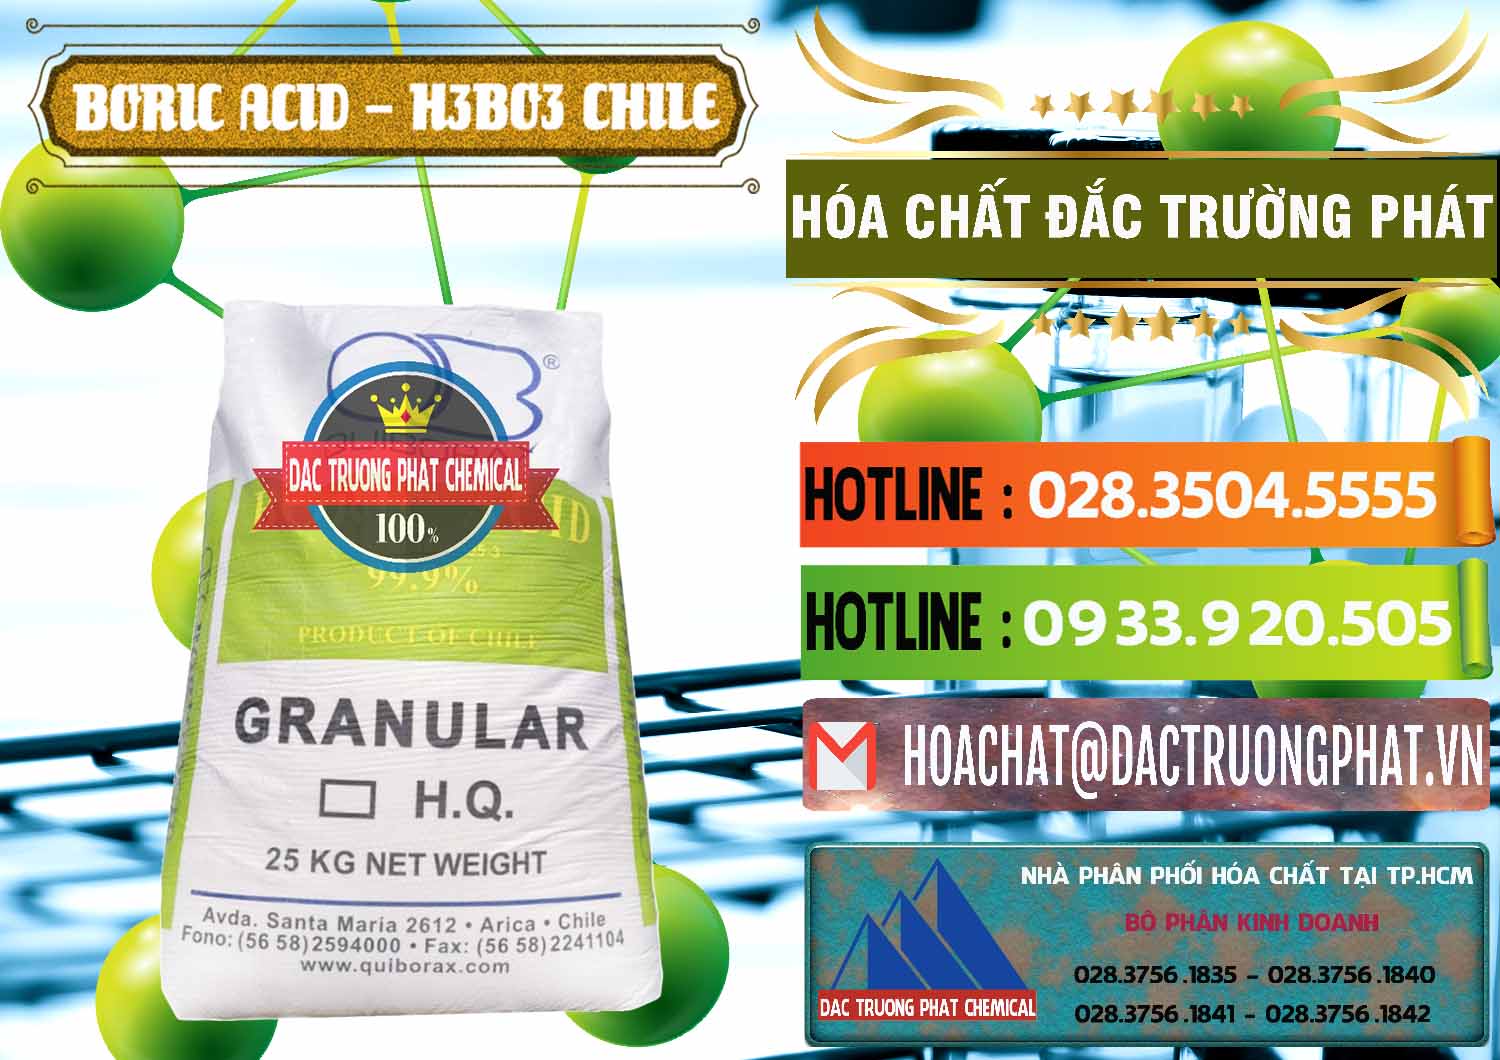 Nơi bán - cung ứng Acid Boric – Axit Boric H3BO3 99% Quiborax Chile - 0281 - Chuyên phân phối và cung cấp hóa chất tại TP.HCM - cungcaphoachat.com.vn